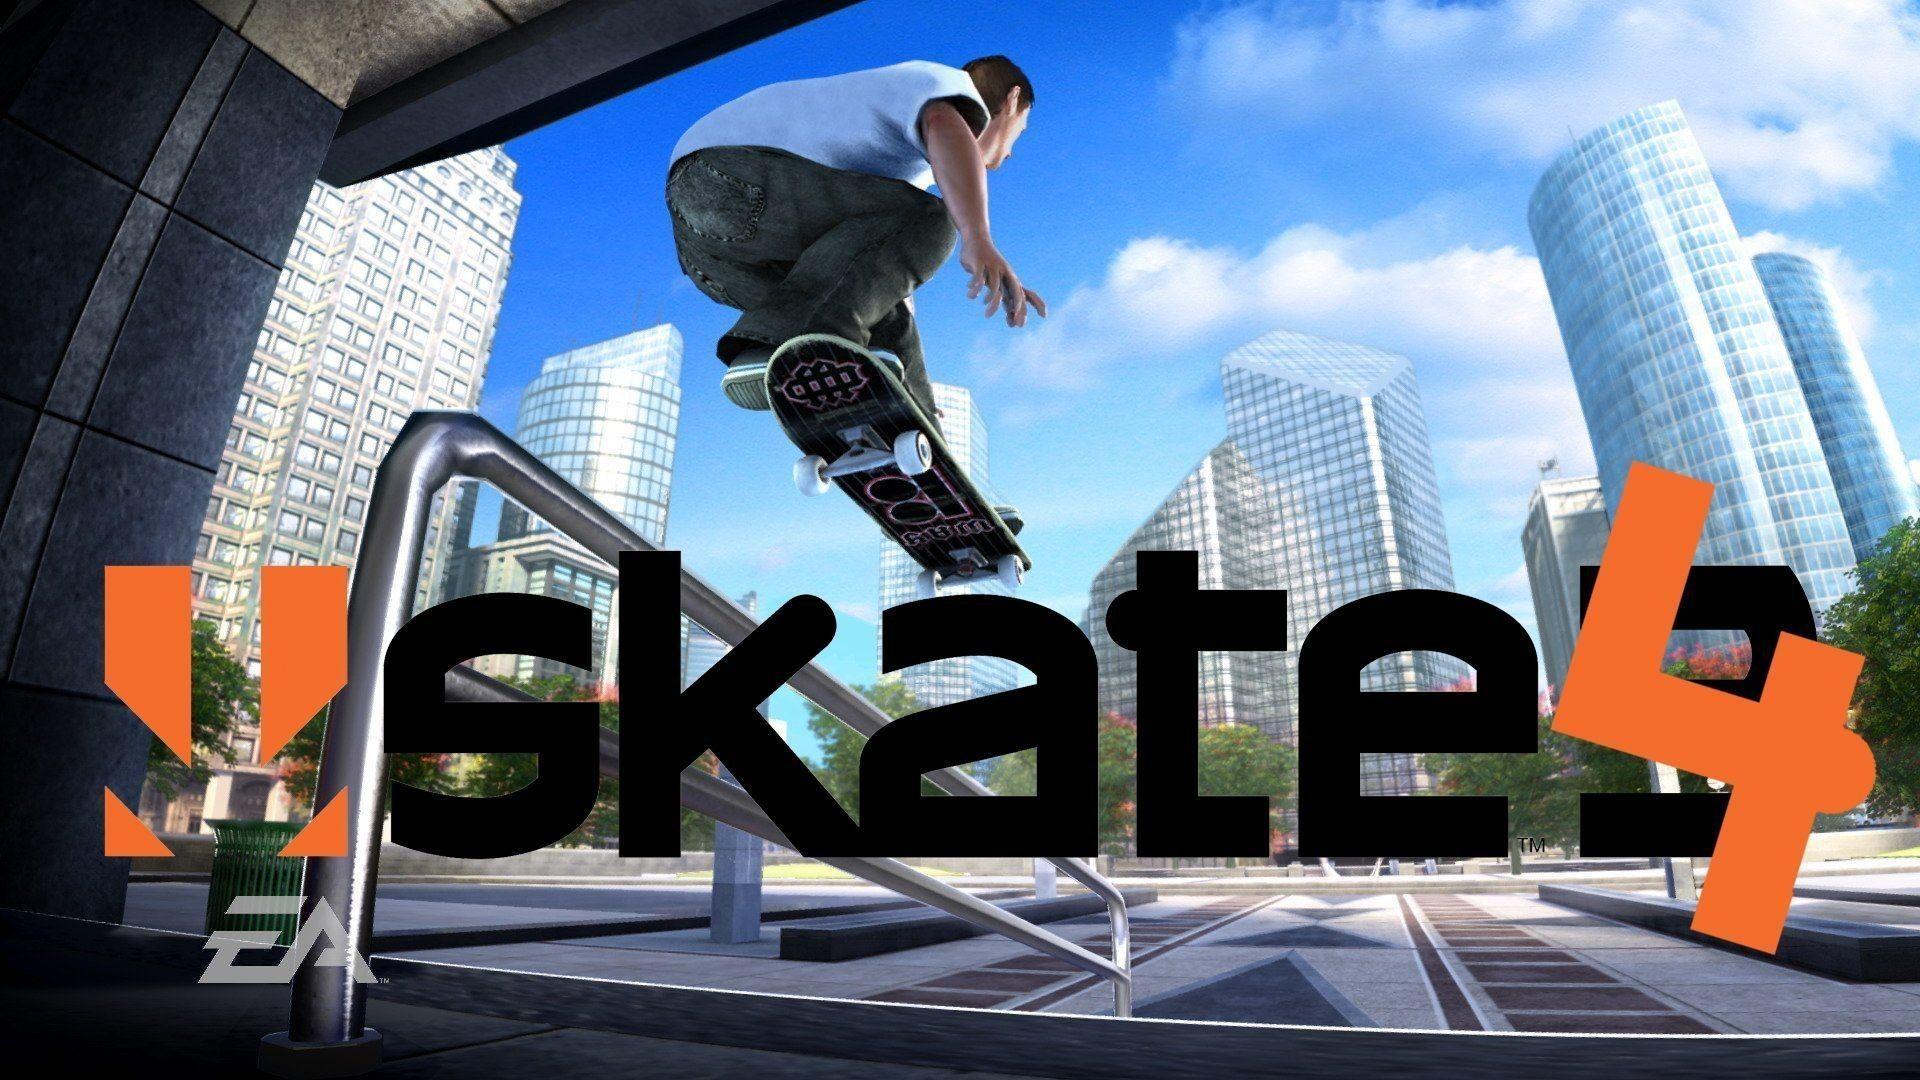 skate 3 pc free download